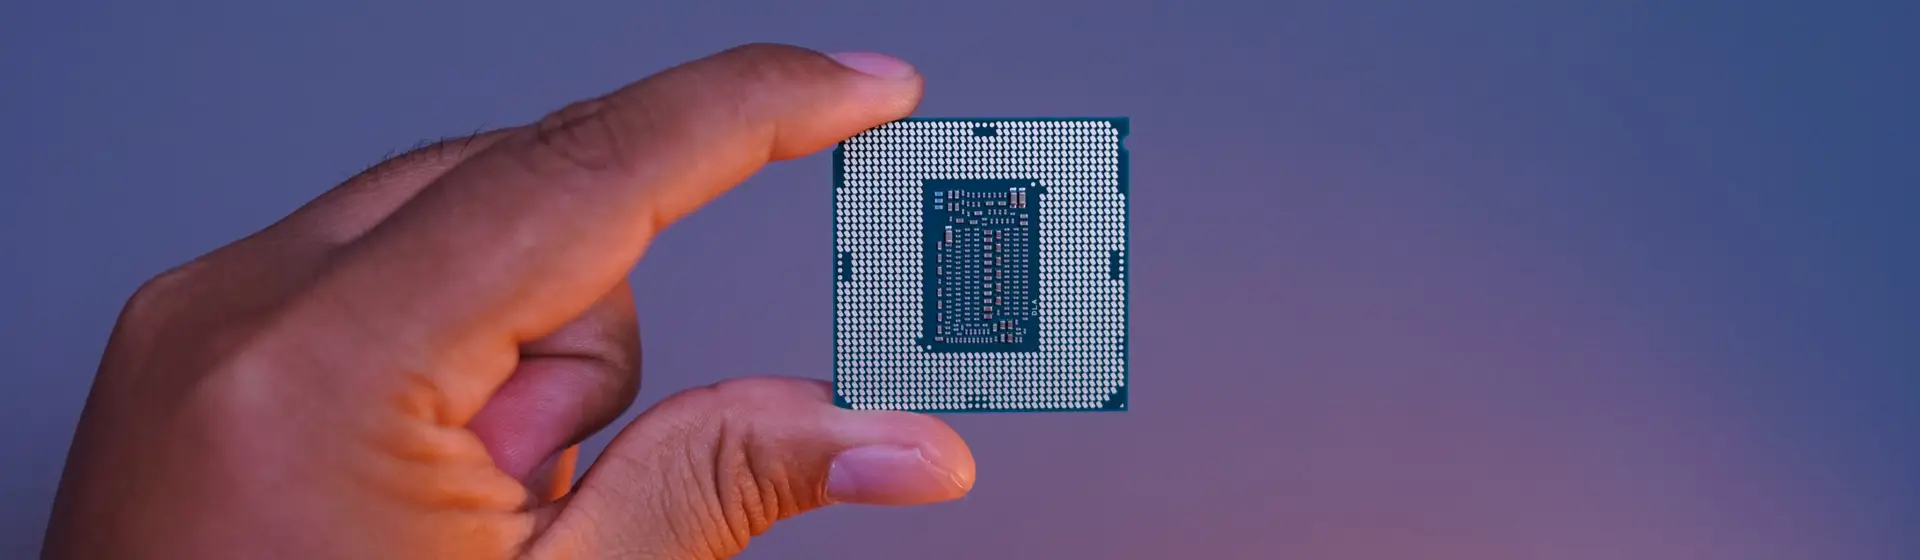 Intel Core i9 9900K ainda vale a pena? Análise do chip de 9ª geração